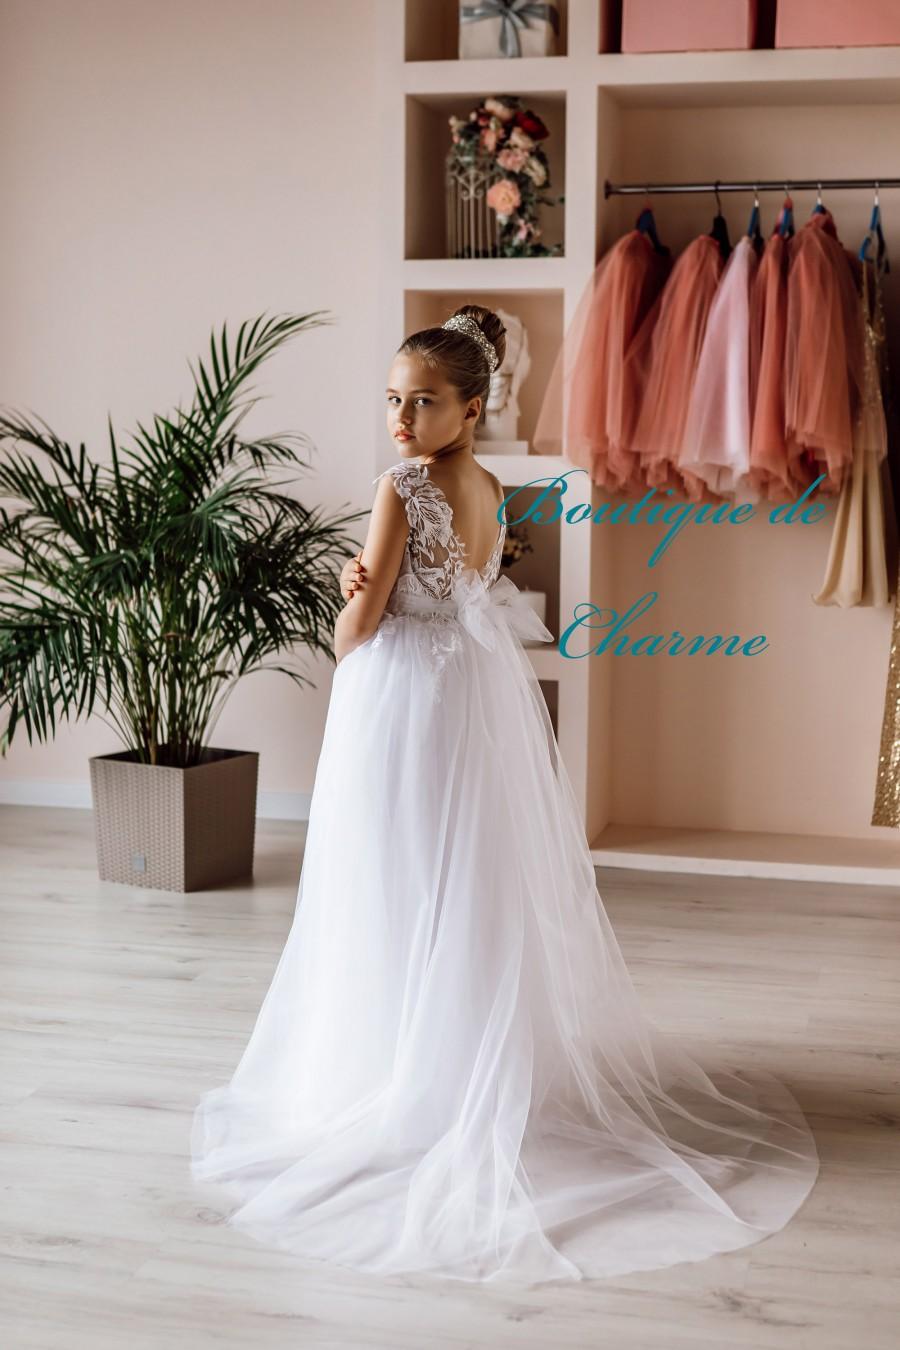 Wedding - Flower girl dress train, Tulle flower girl dress,Elegant flower girl dress,Lace girl dress,Long girl dress,Toddler wedding dress,White dress